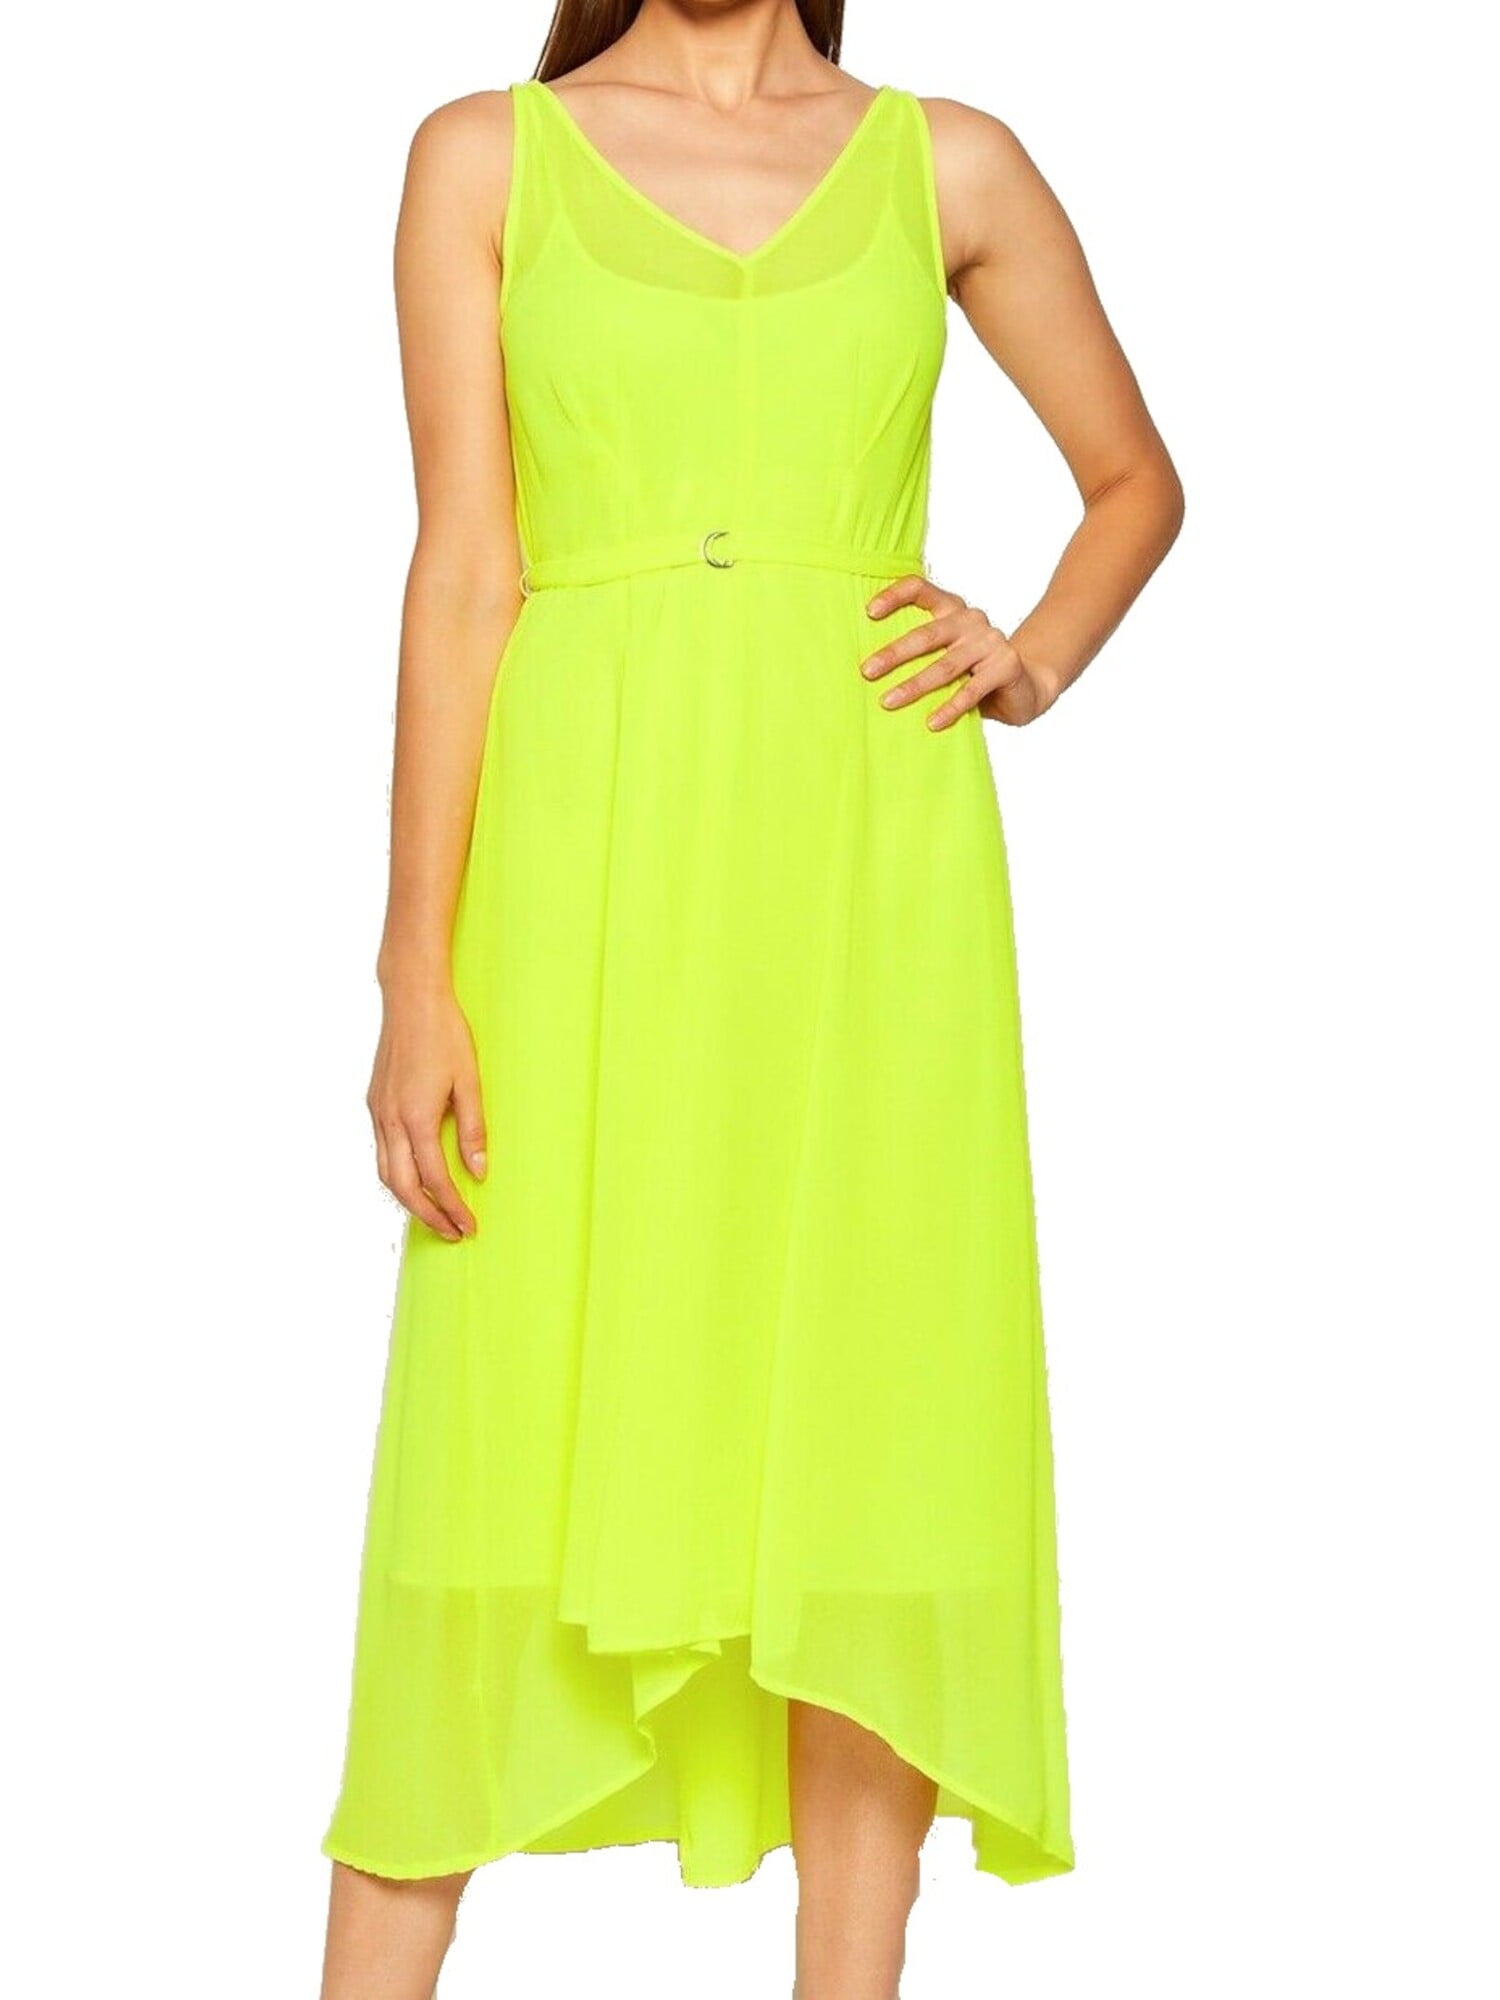 DKNY Dresses Under 25 - Walmart.com ...